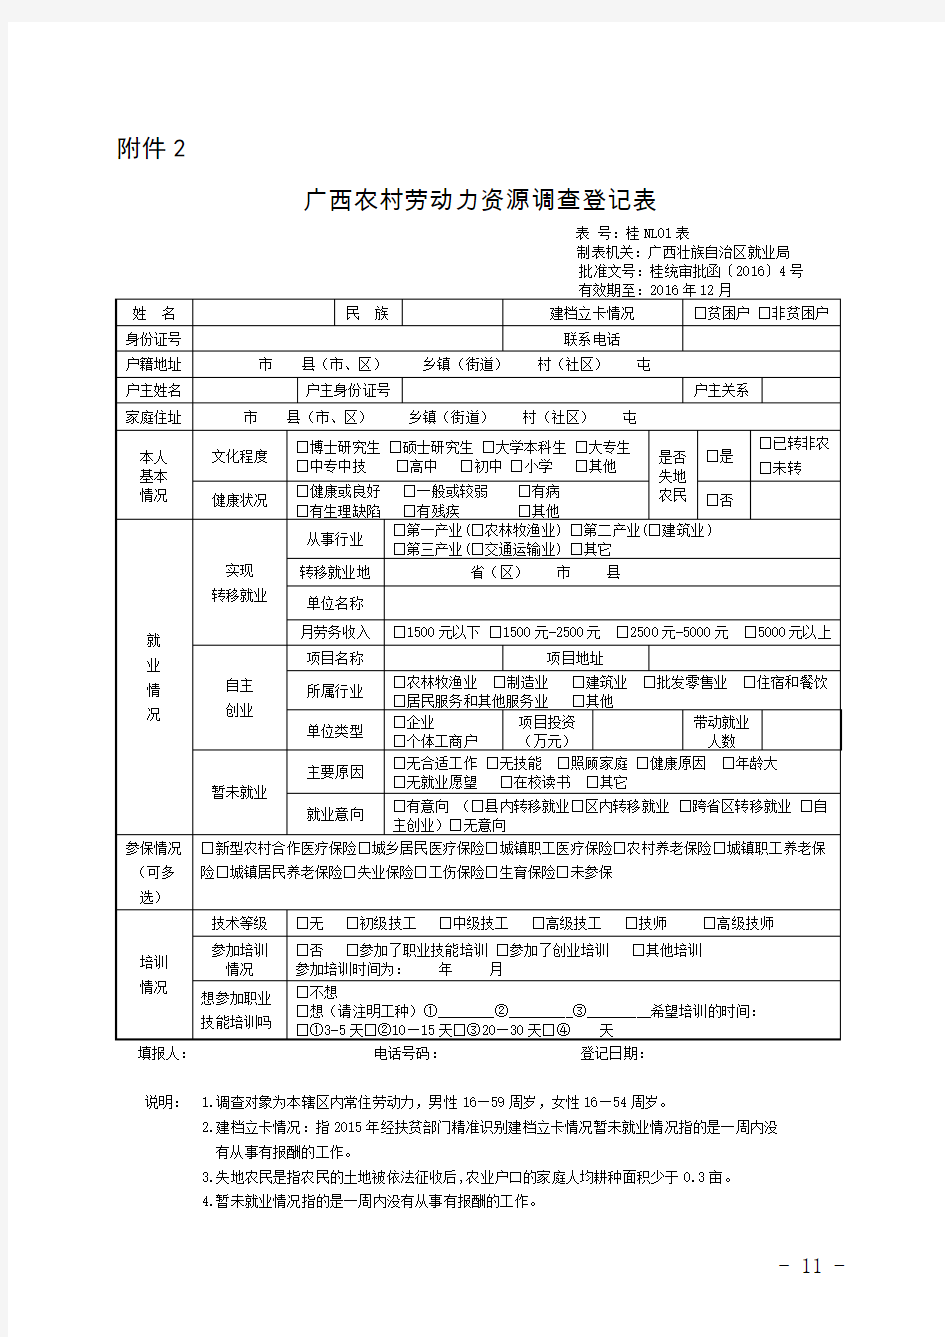 广西农村劳动力资源调查登记表